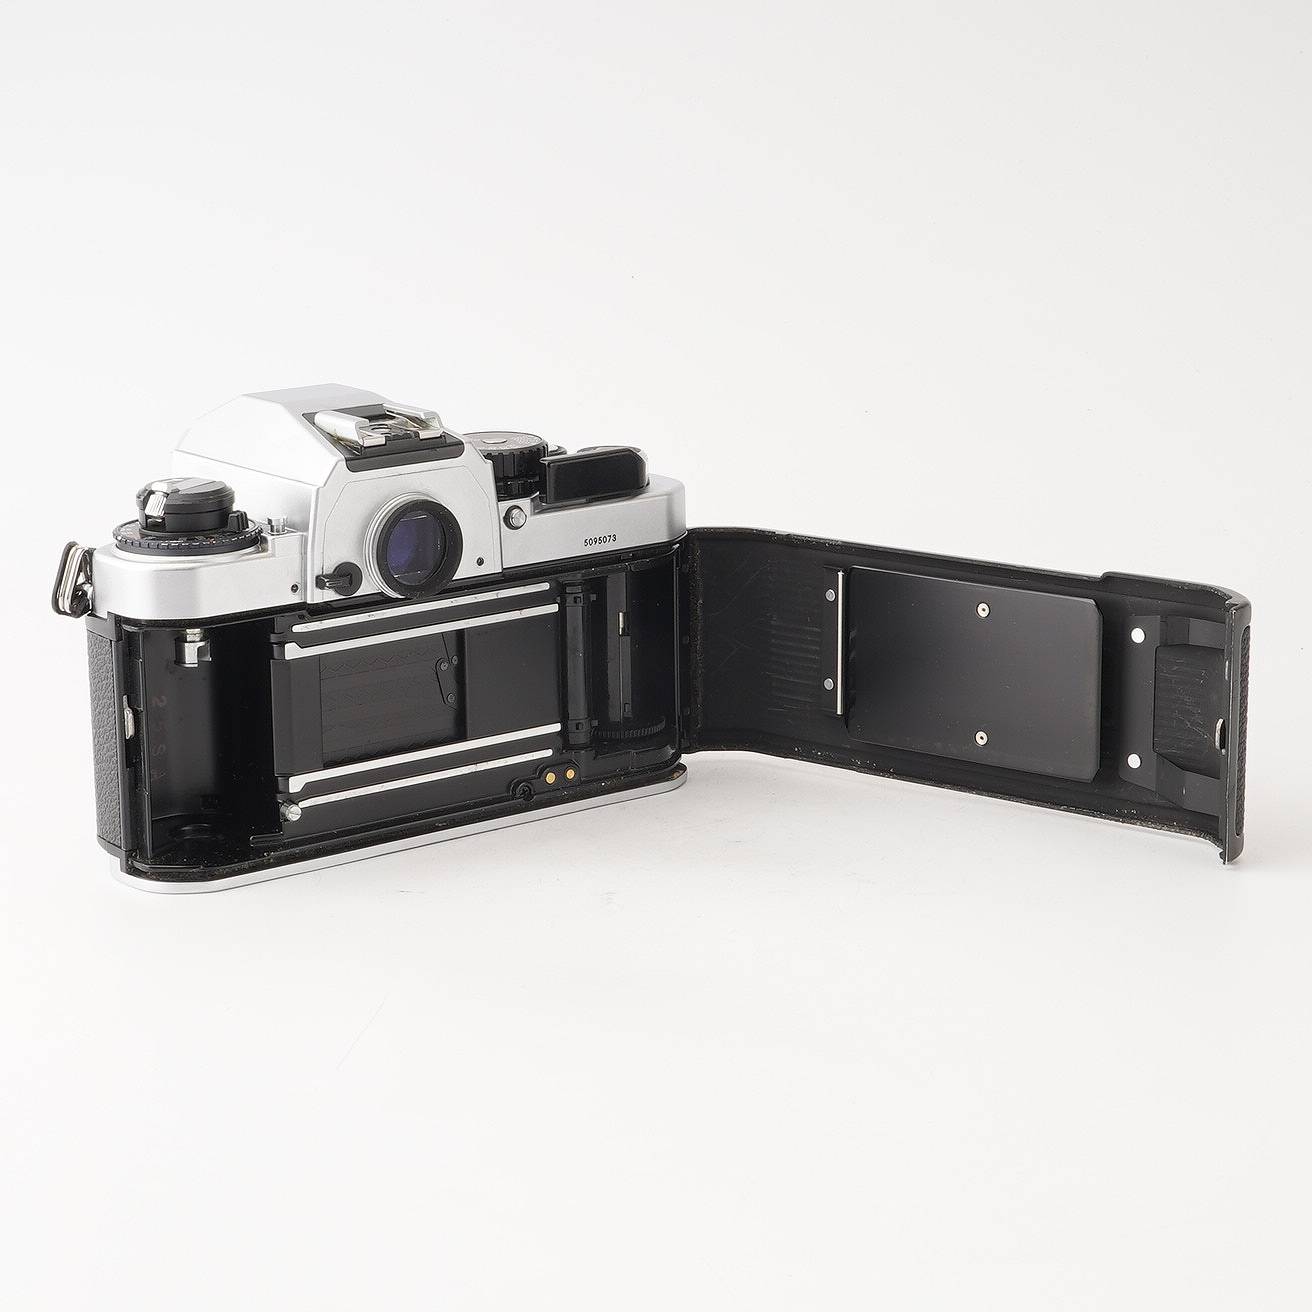 ニコン Nikon FA 一眼レフフィルムカメラ – Natural Camera